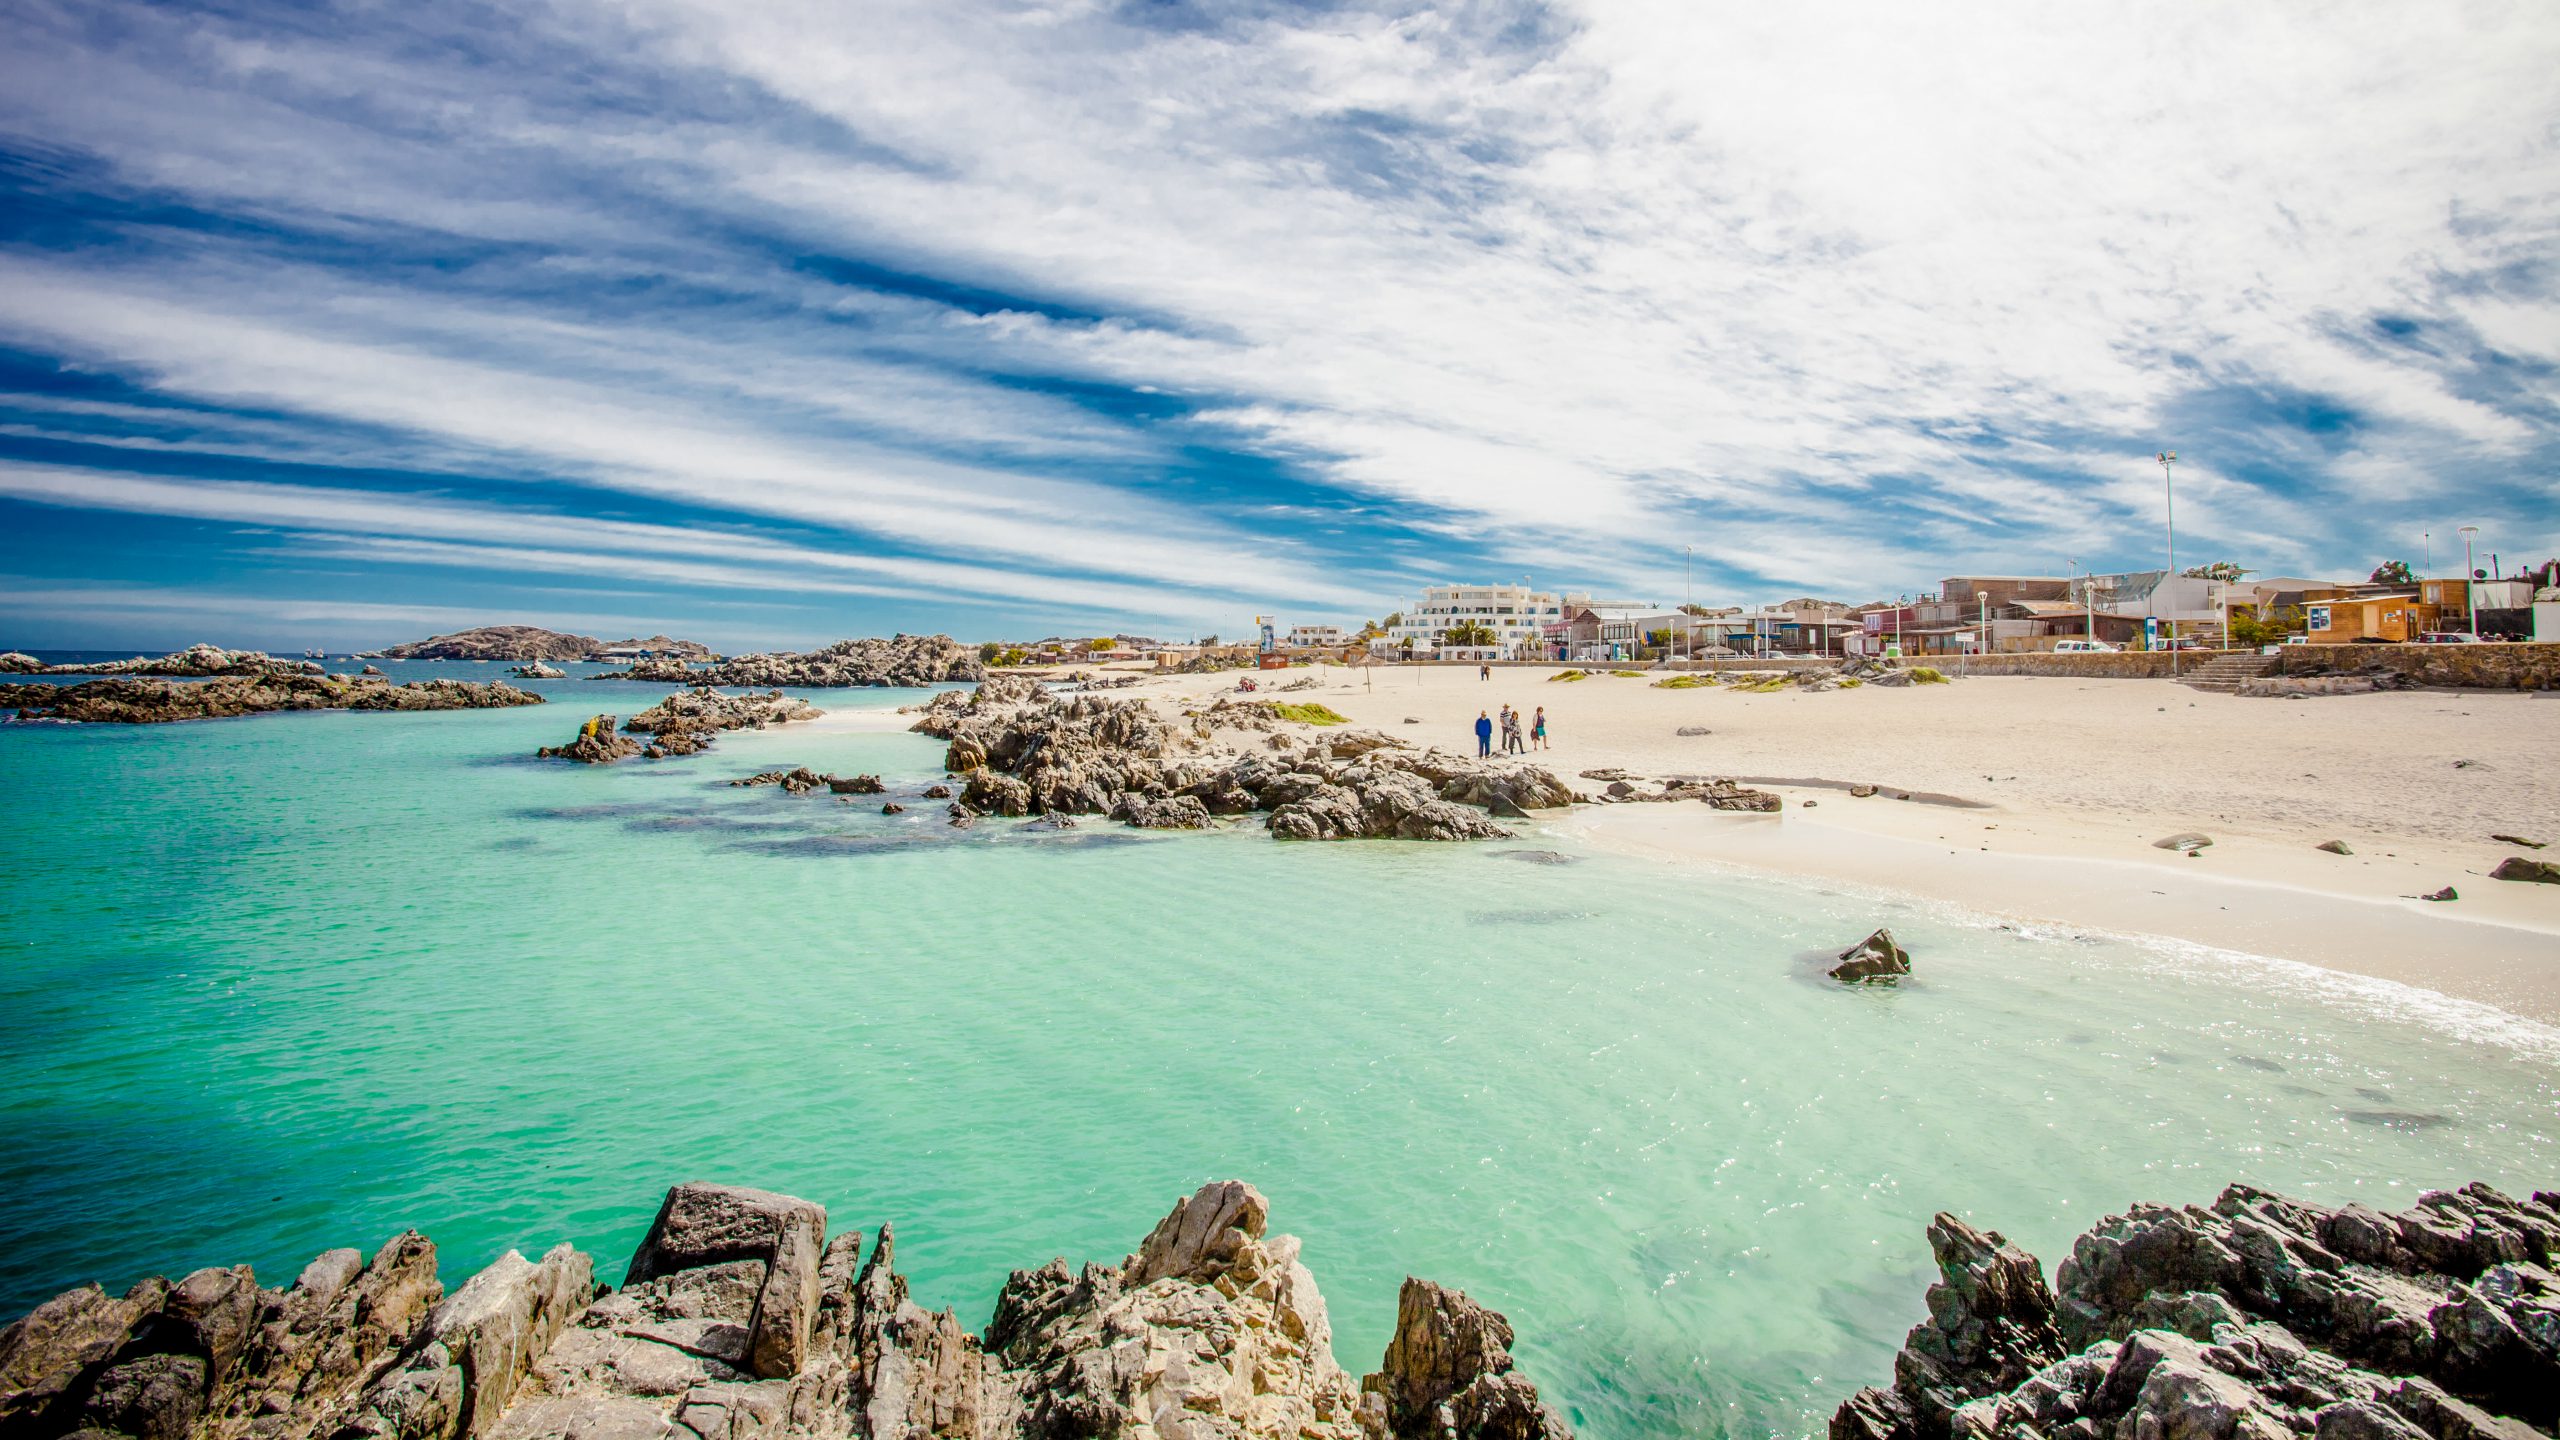 Bahía Inglesa encabeza lista de revista internacional como la mejor playa de Chile